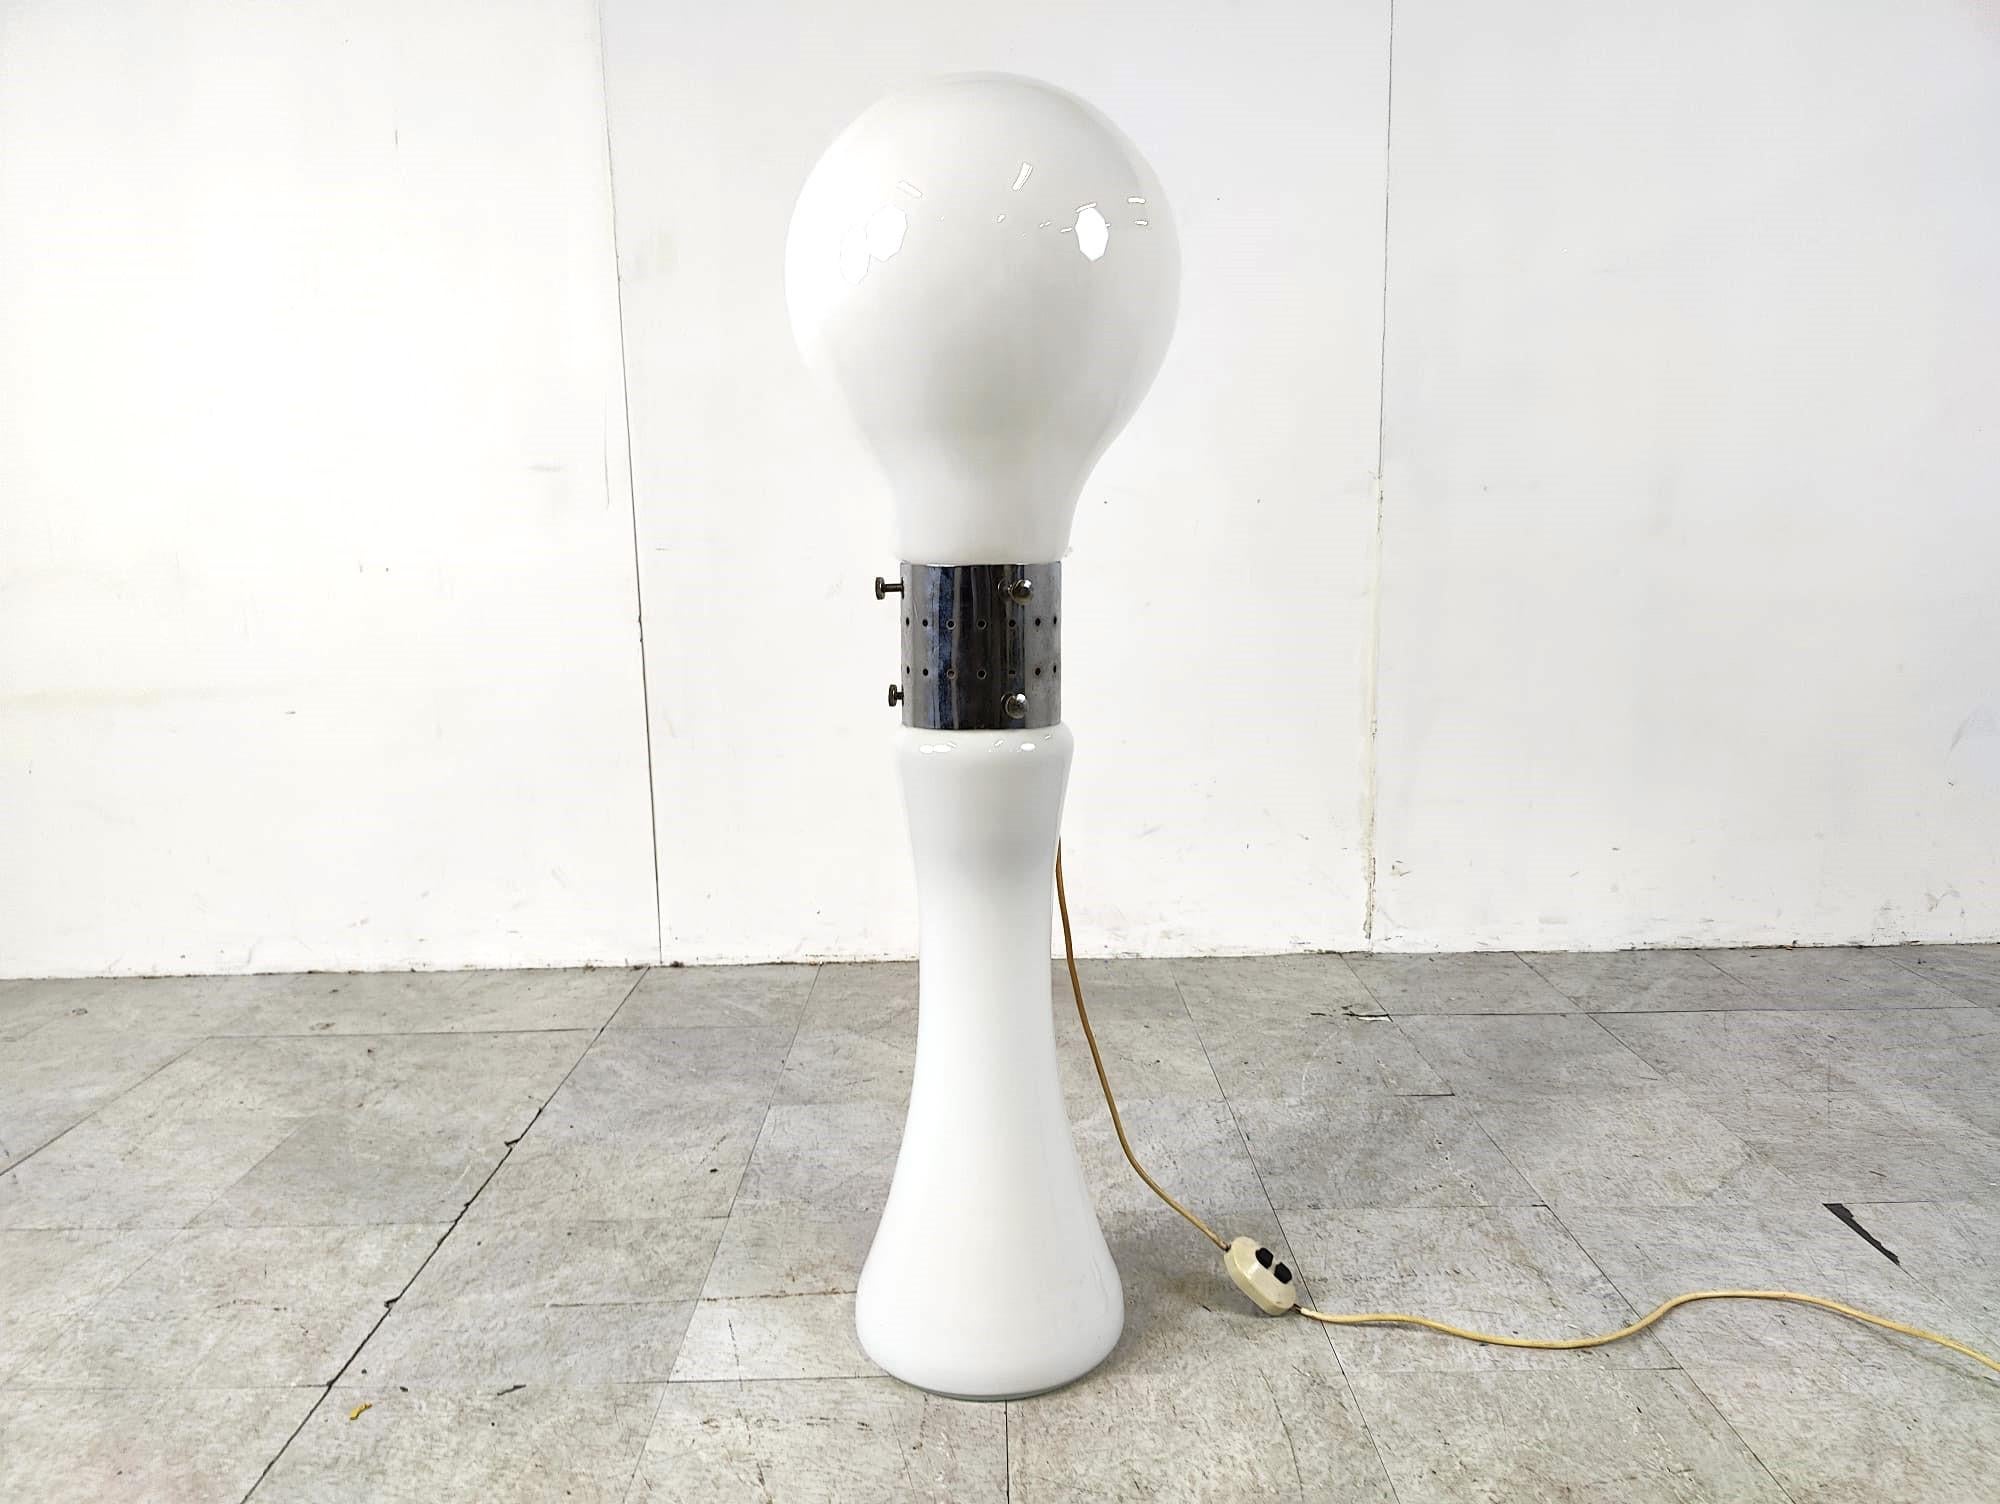 Lampadaire intemporel modèle 'birillo' conçu par Carlo Nason pour AV Mazzega.

Magnifique lampadaire de l'ère spatiale avec un abat-jour en forme d'ampoule en verre blanc. L'ensemble de la lampe est en verre de Murano avec des pièces centrales